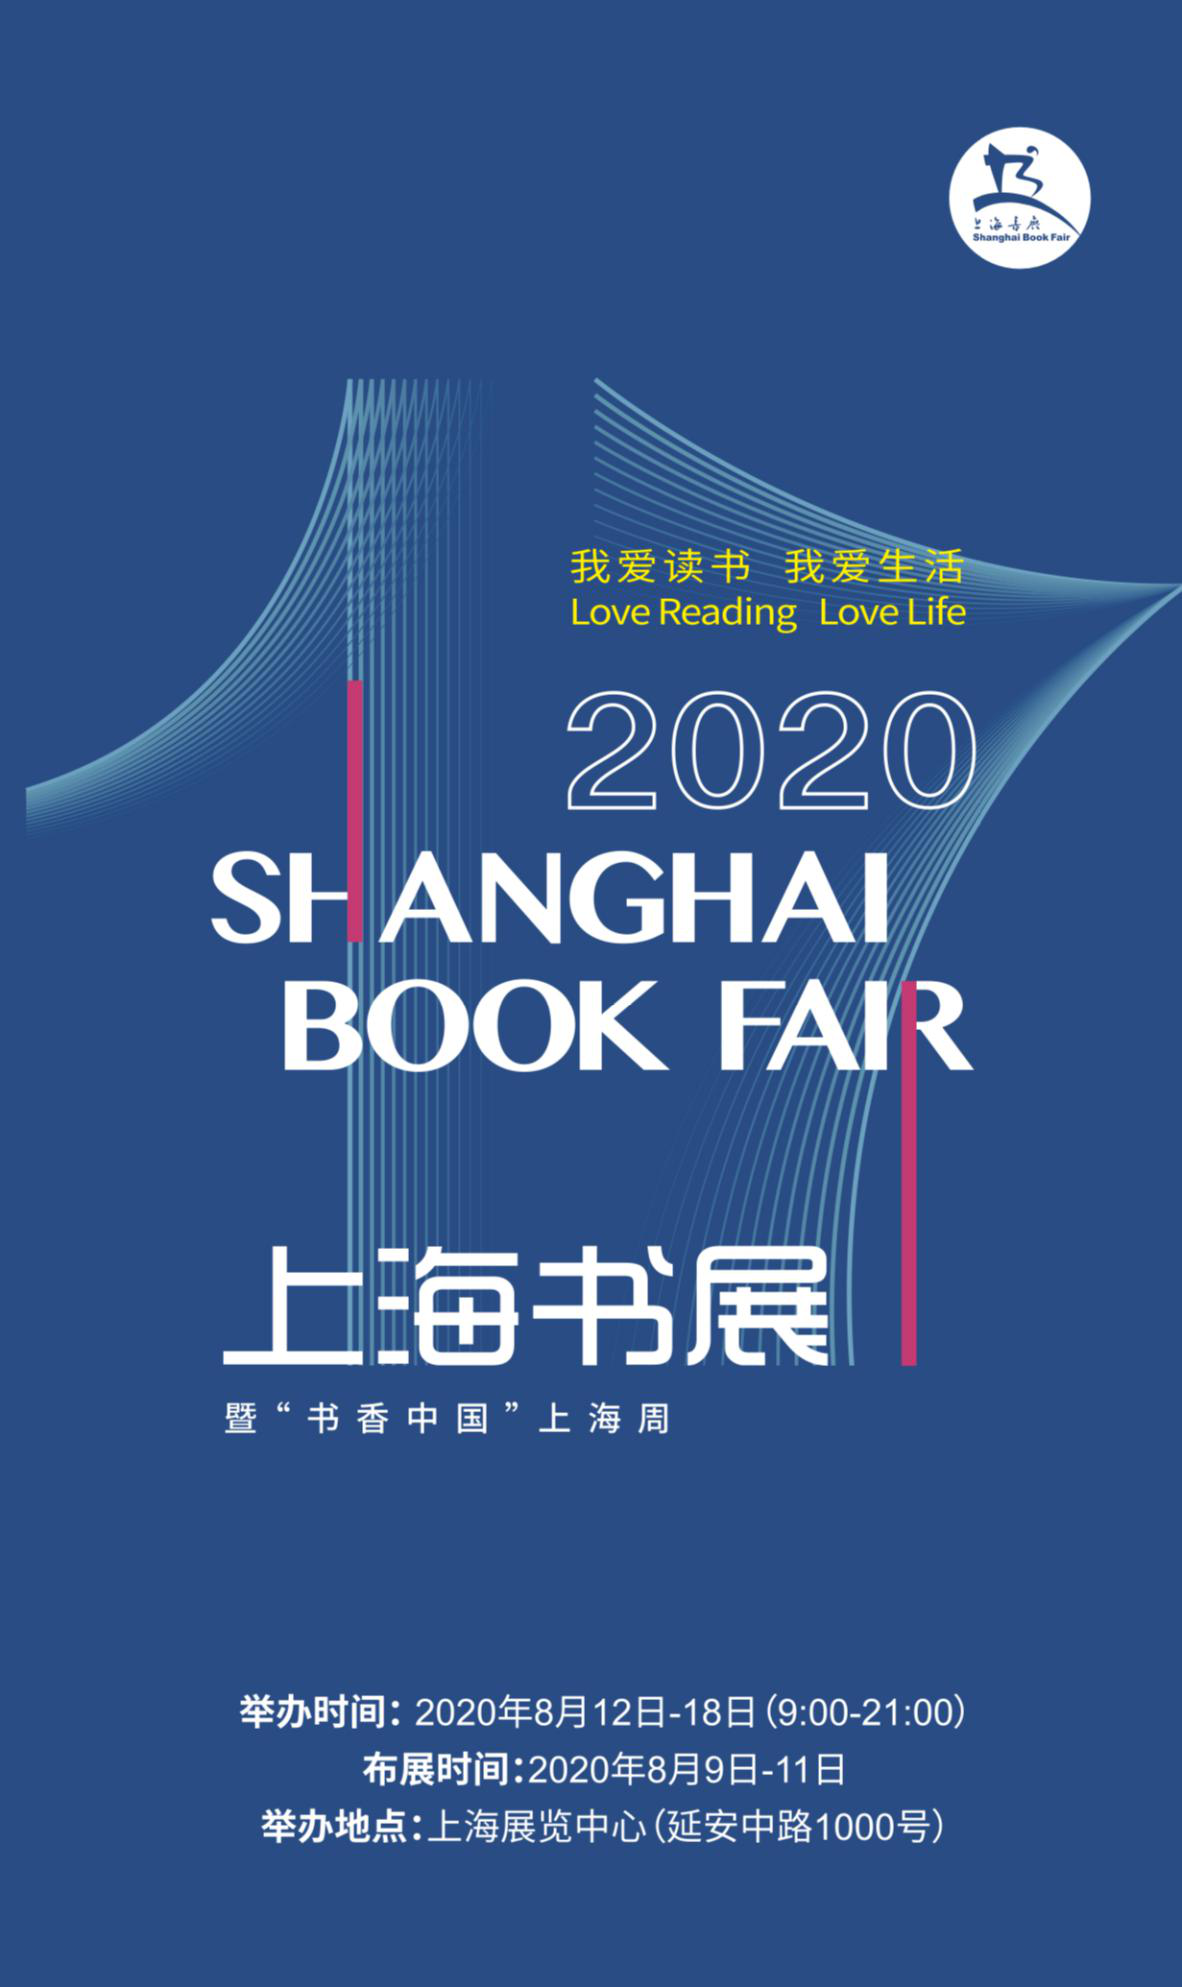 上海书展将于8月12日至18日如期举行 新华网